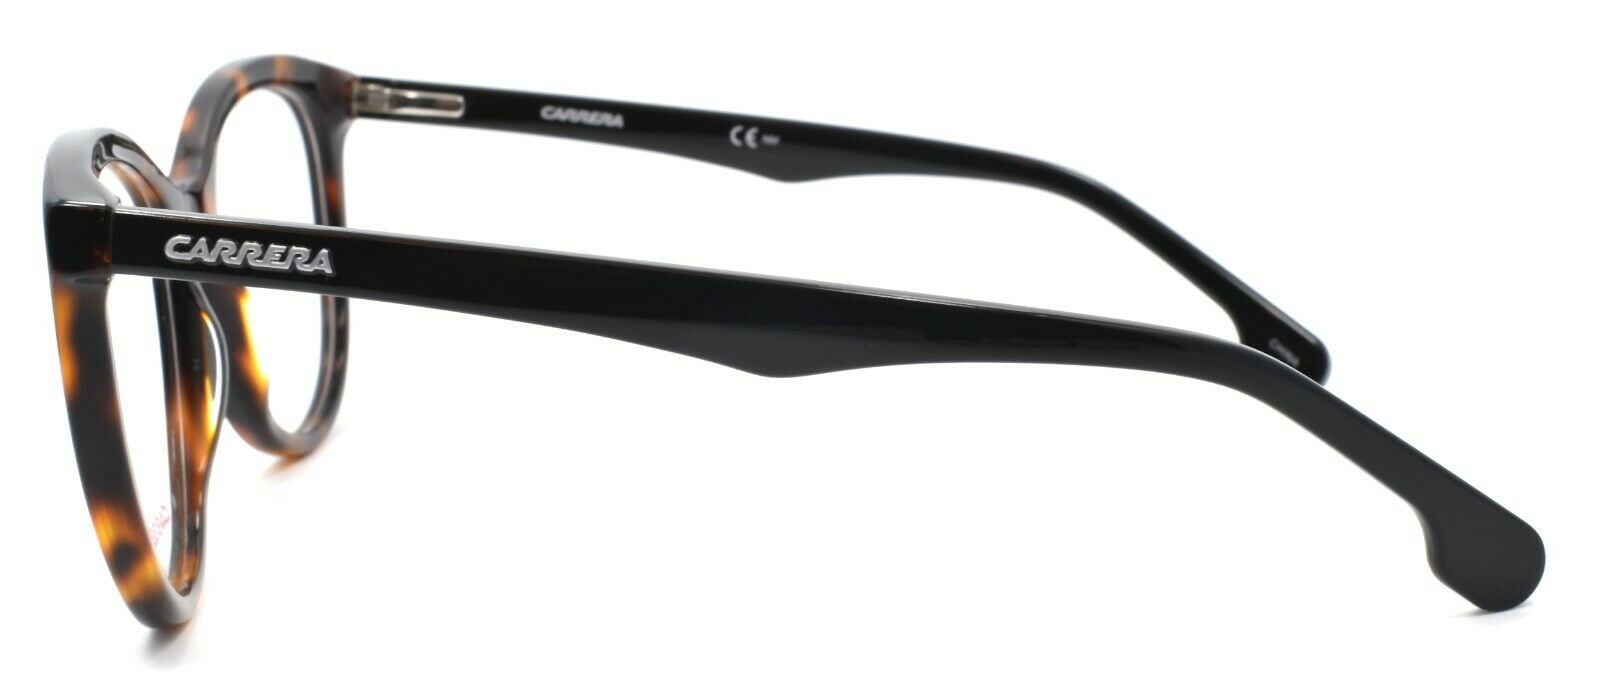 3-Carrera CA5545/V 555 Women's Eyeglasses Frames 52-18-140 Light Havana / Black-762753606037-IKSpecs